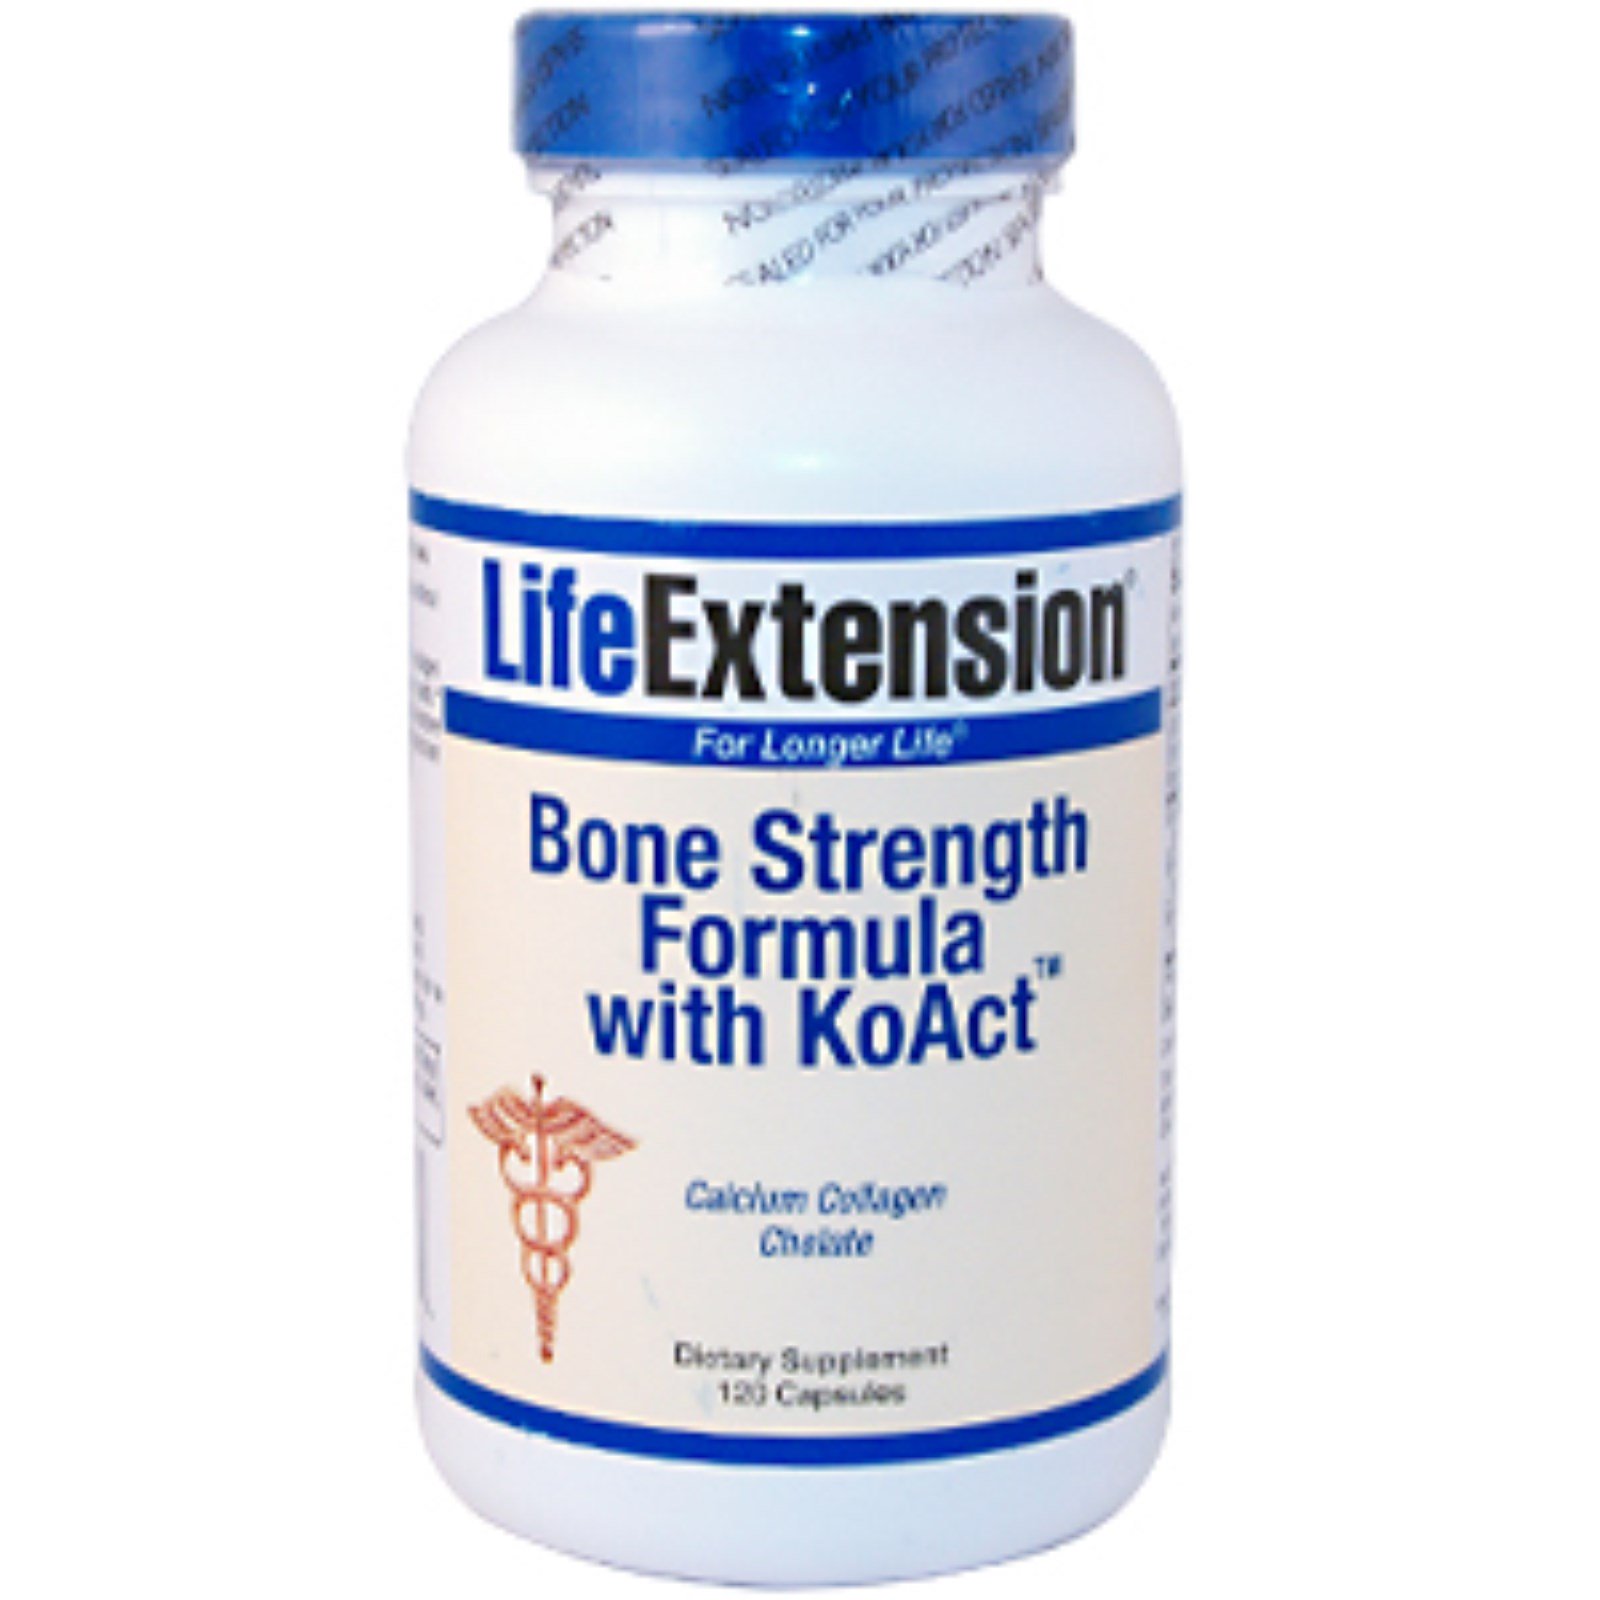 Bone strength. Bone strength Formula. Life Extension Bone Formula. Лайф формула v.i.p. капс. №120. Life Extension Bone restore 120 Capsules.